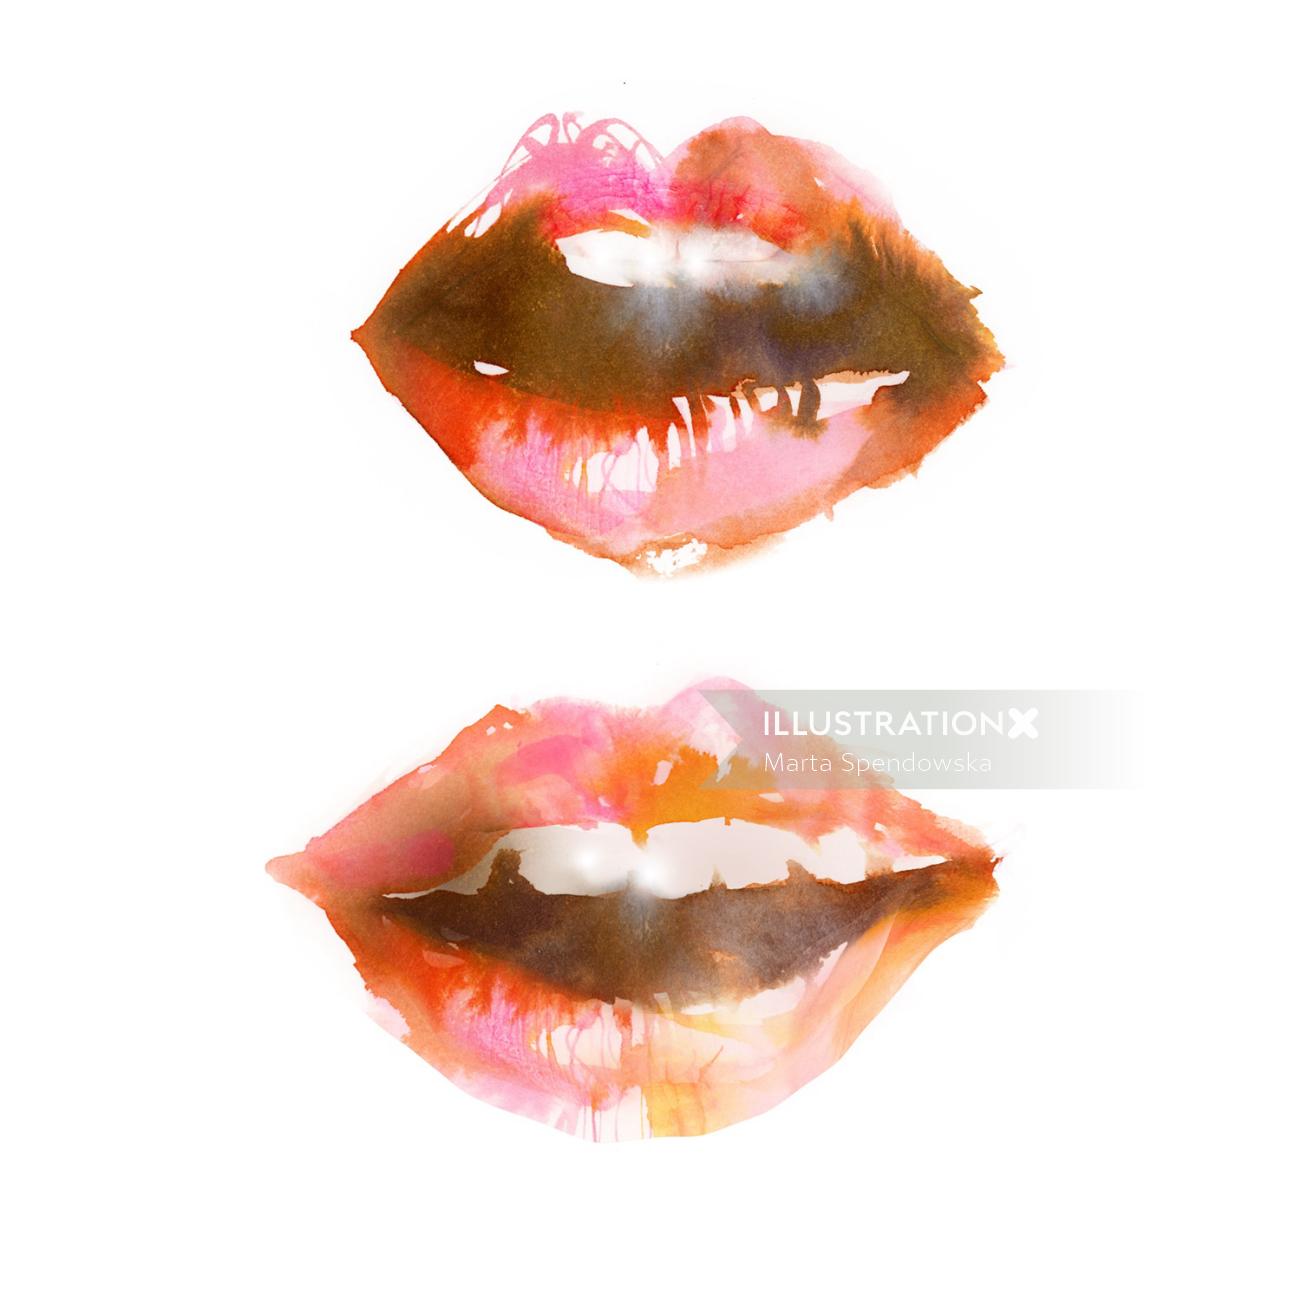 嘴唇的水彩绘画